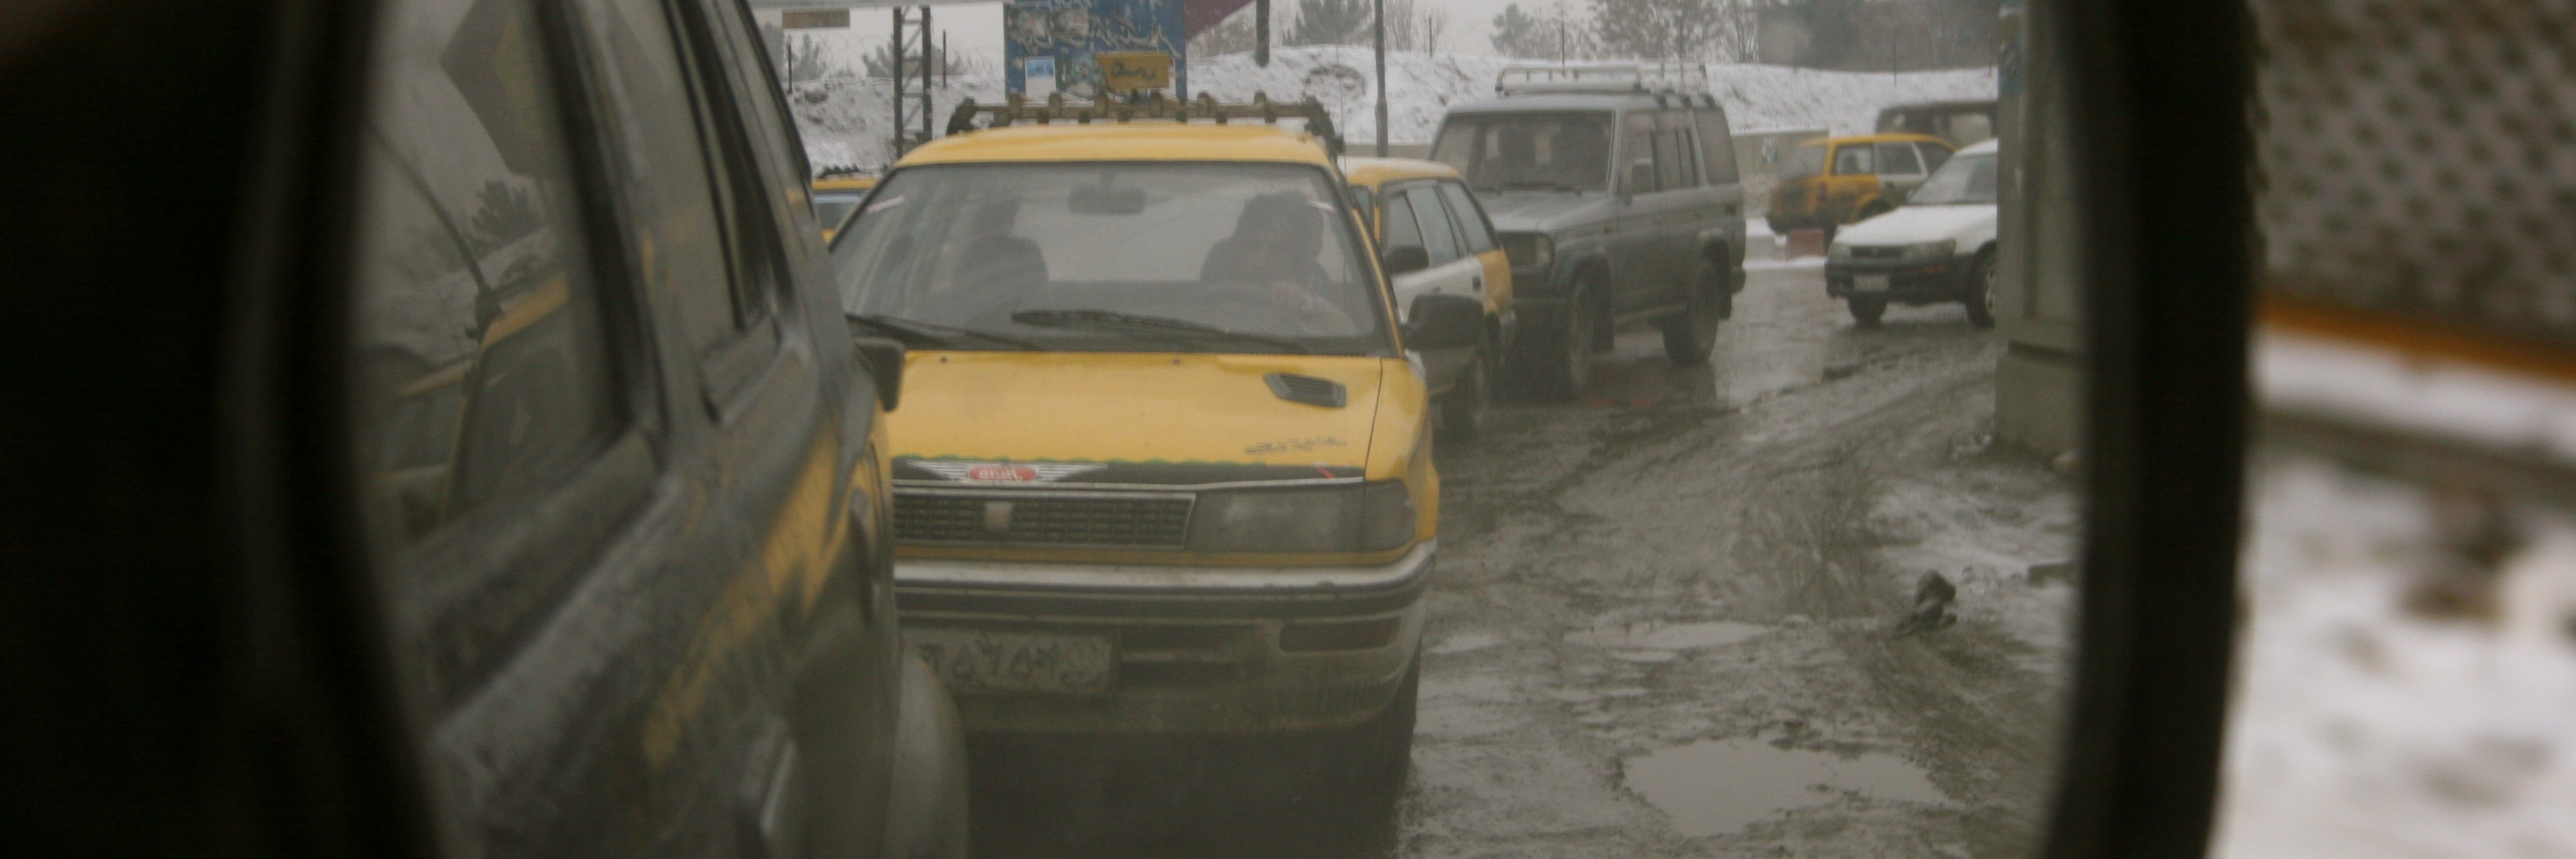 Kabul traffic photo